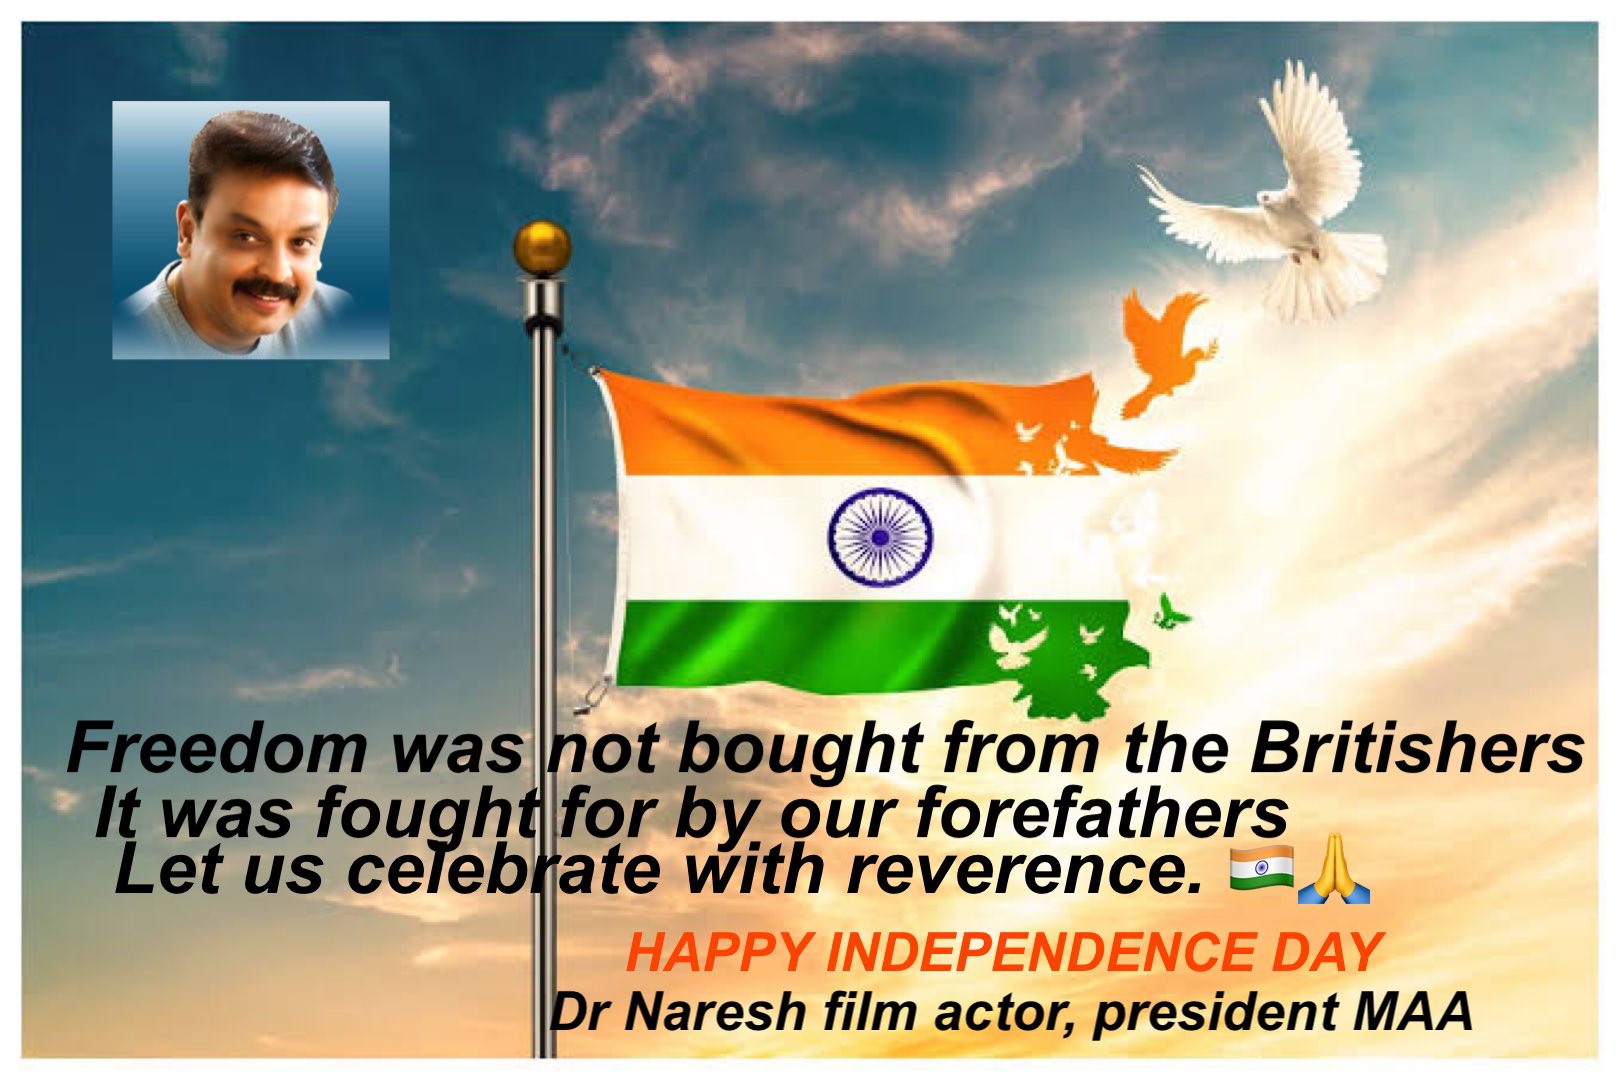 H.E Dr Naresh VK actor on Twitter: 